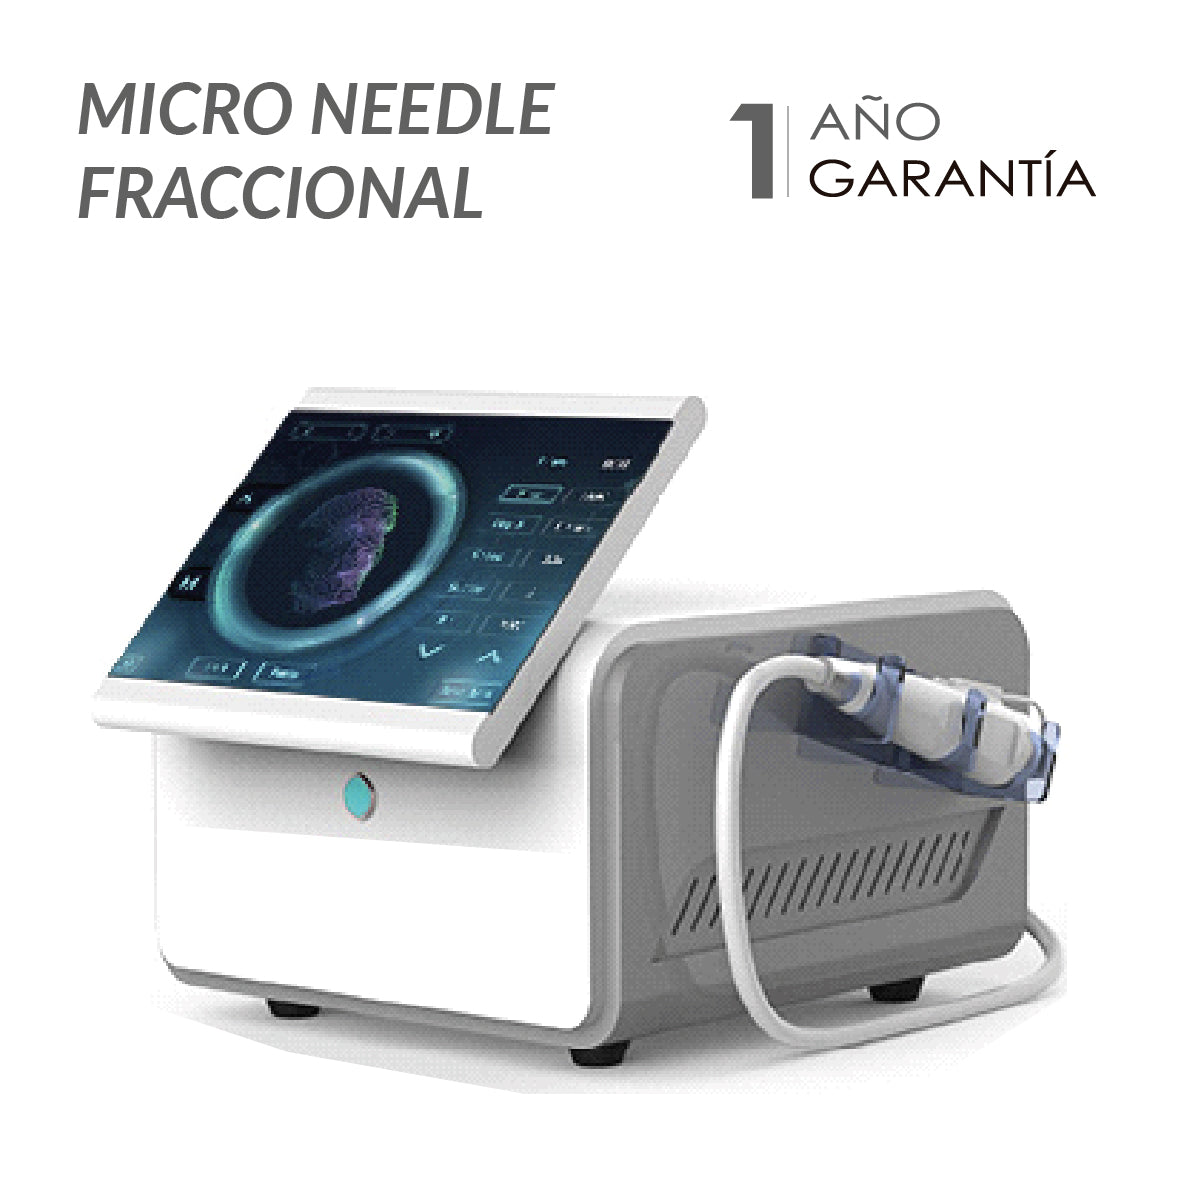 Micro Needle Fraccional